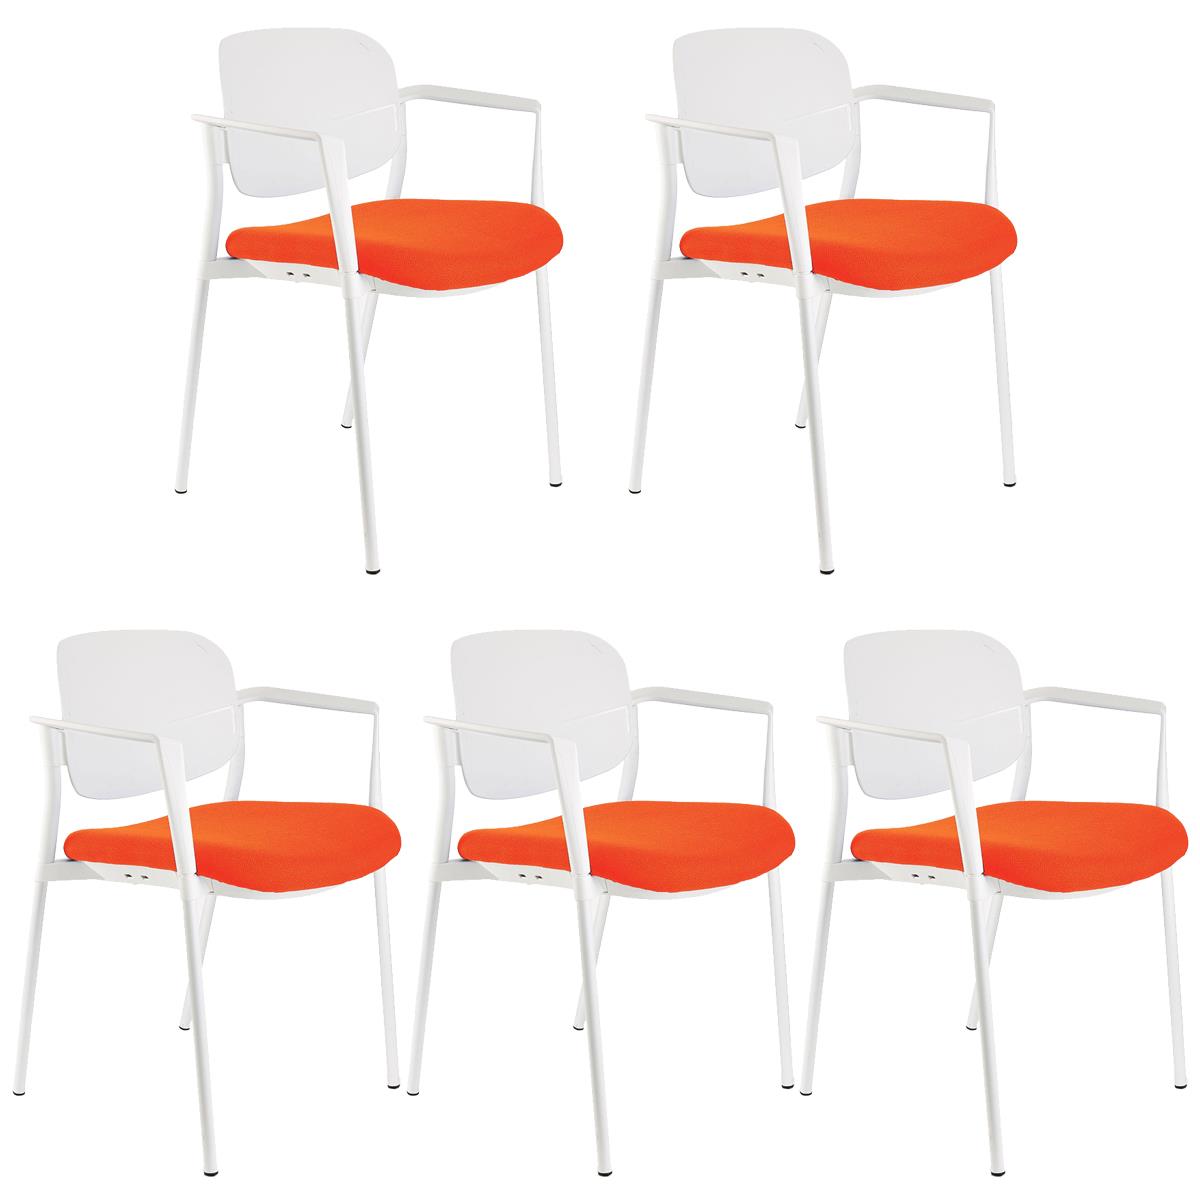 Lote de 5 sillas de Confidente ERIC, Cómodas y Prácticas, Apilables, Color Naranja